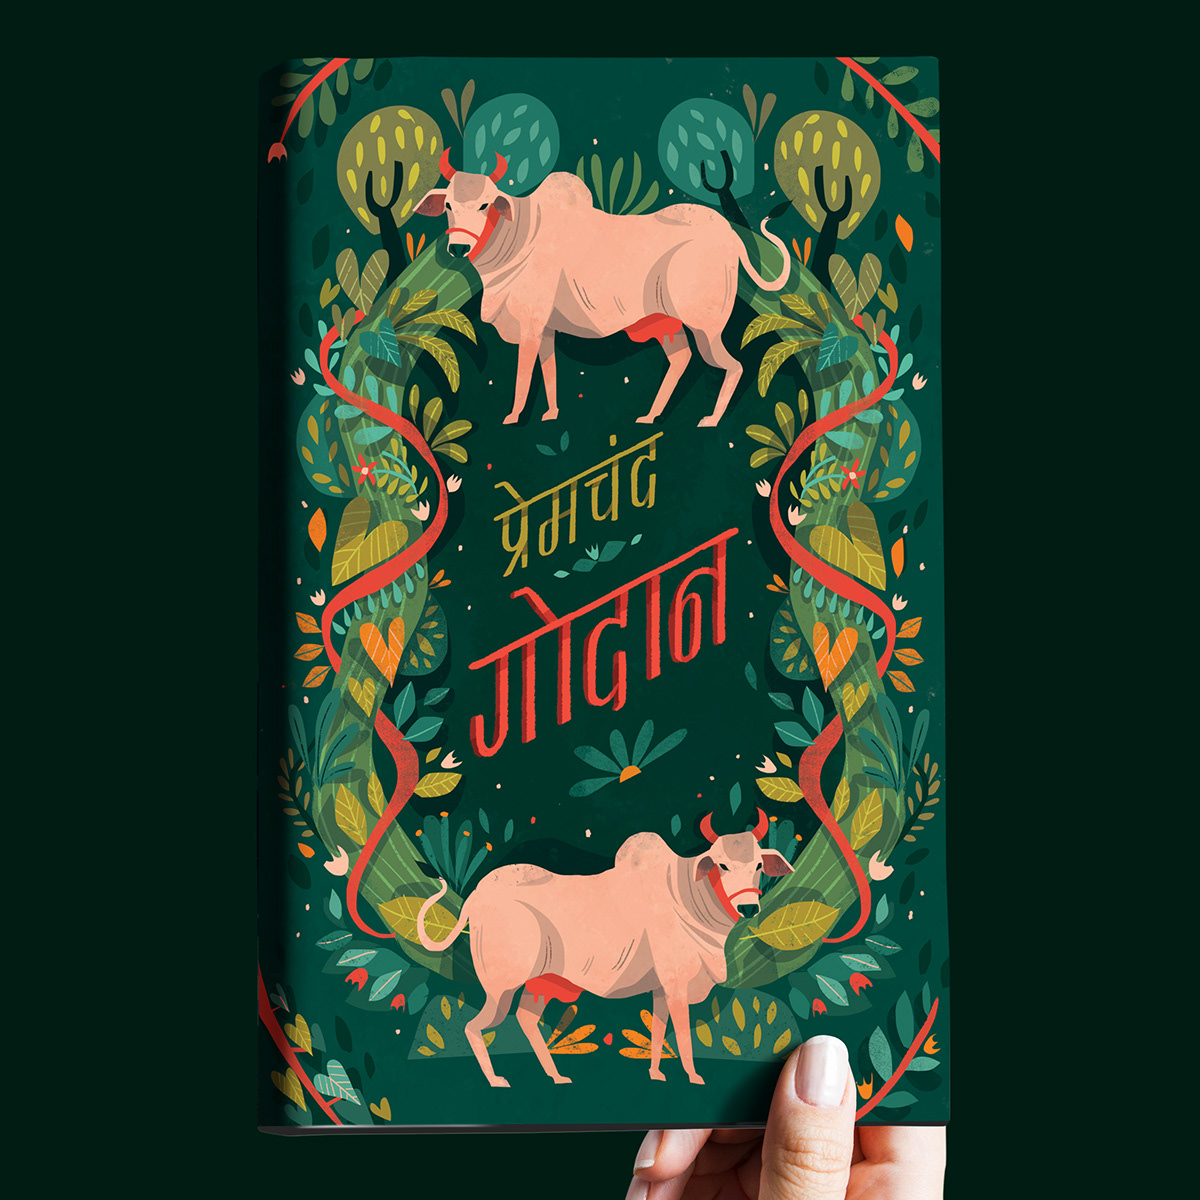 Book Cover Design book cover illustration India illustration cow cow illustration plants illustration book illustration